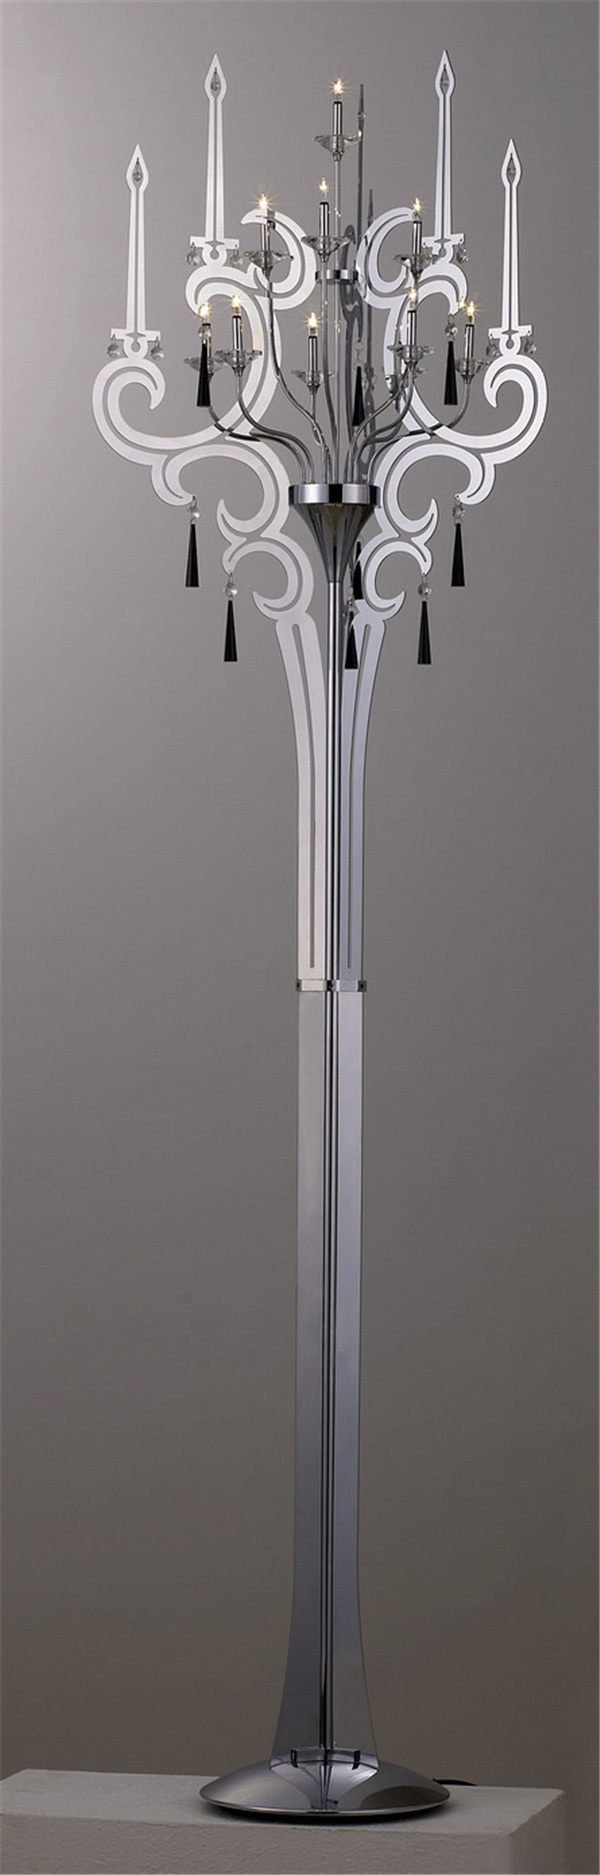 烛台 3d 模型 3d模型 3d模型下载 灯具模型 室内灯具装修 室内 灯具 室内场景模型